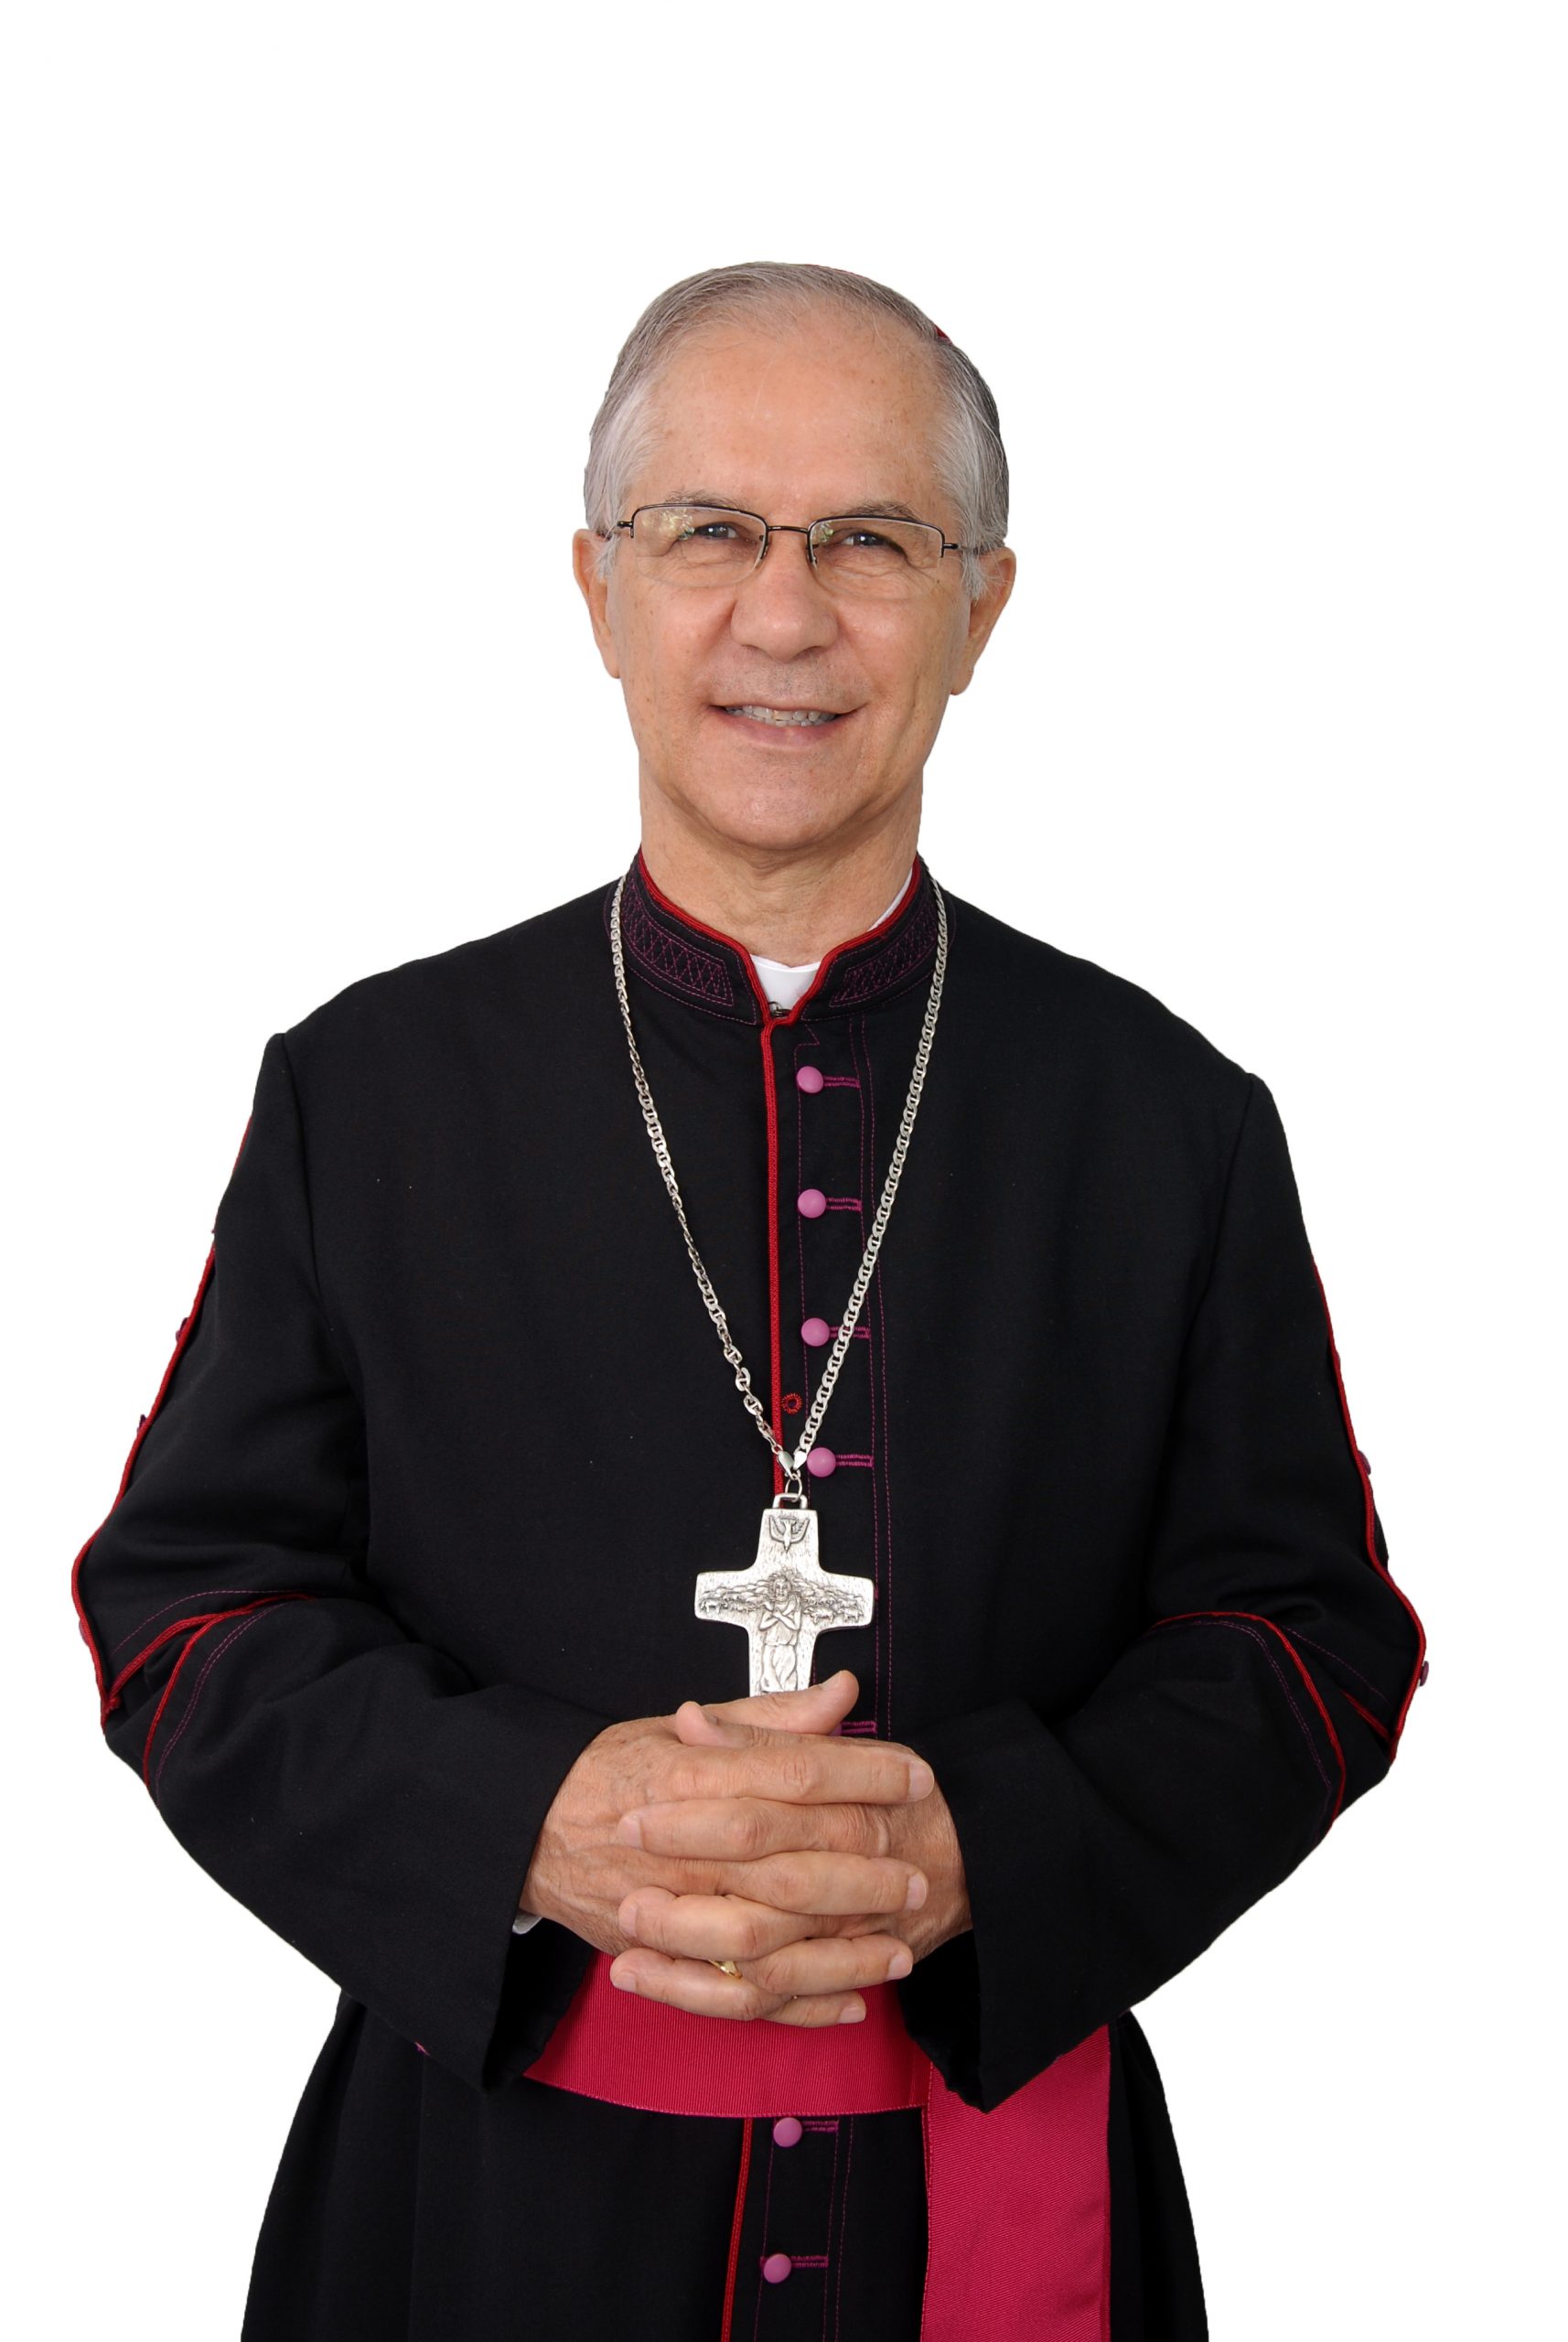 Dom Juarez Delorto Secco é o novo bispo da Diocese de Caratinga